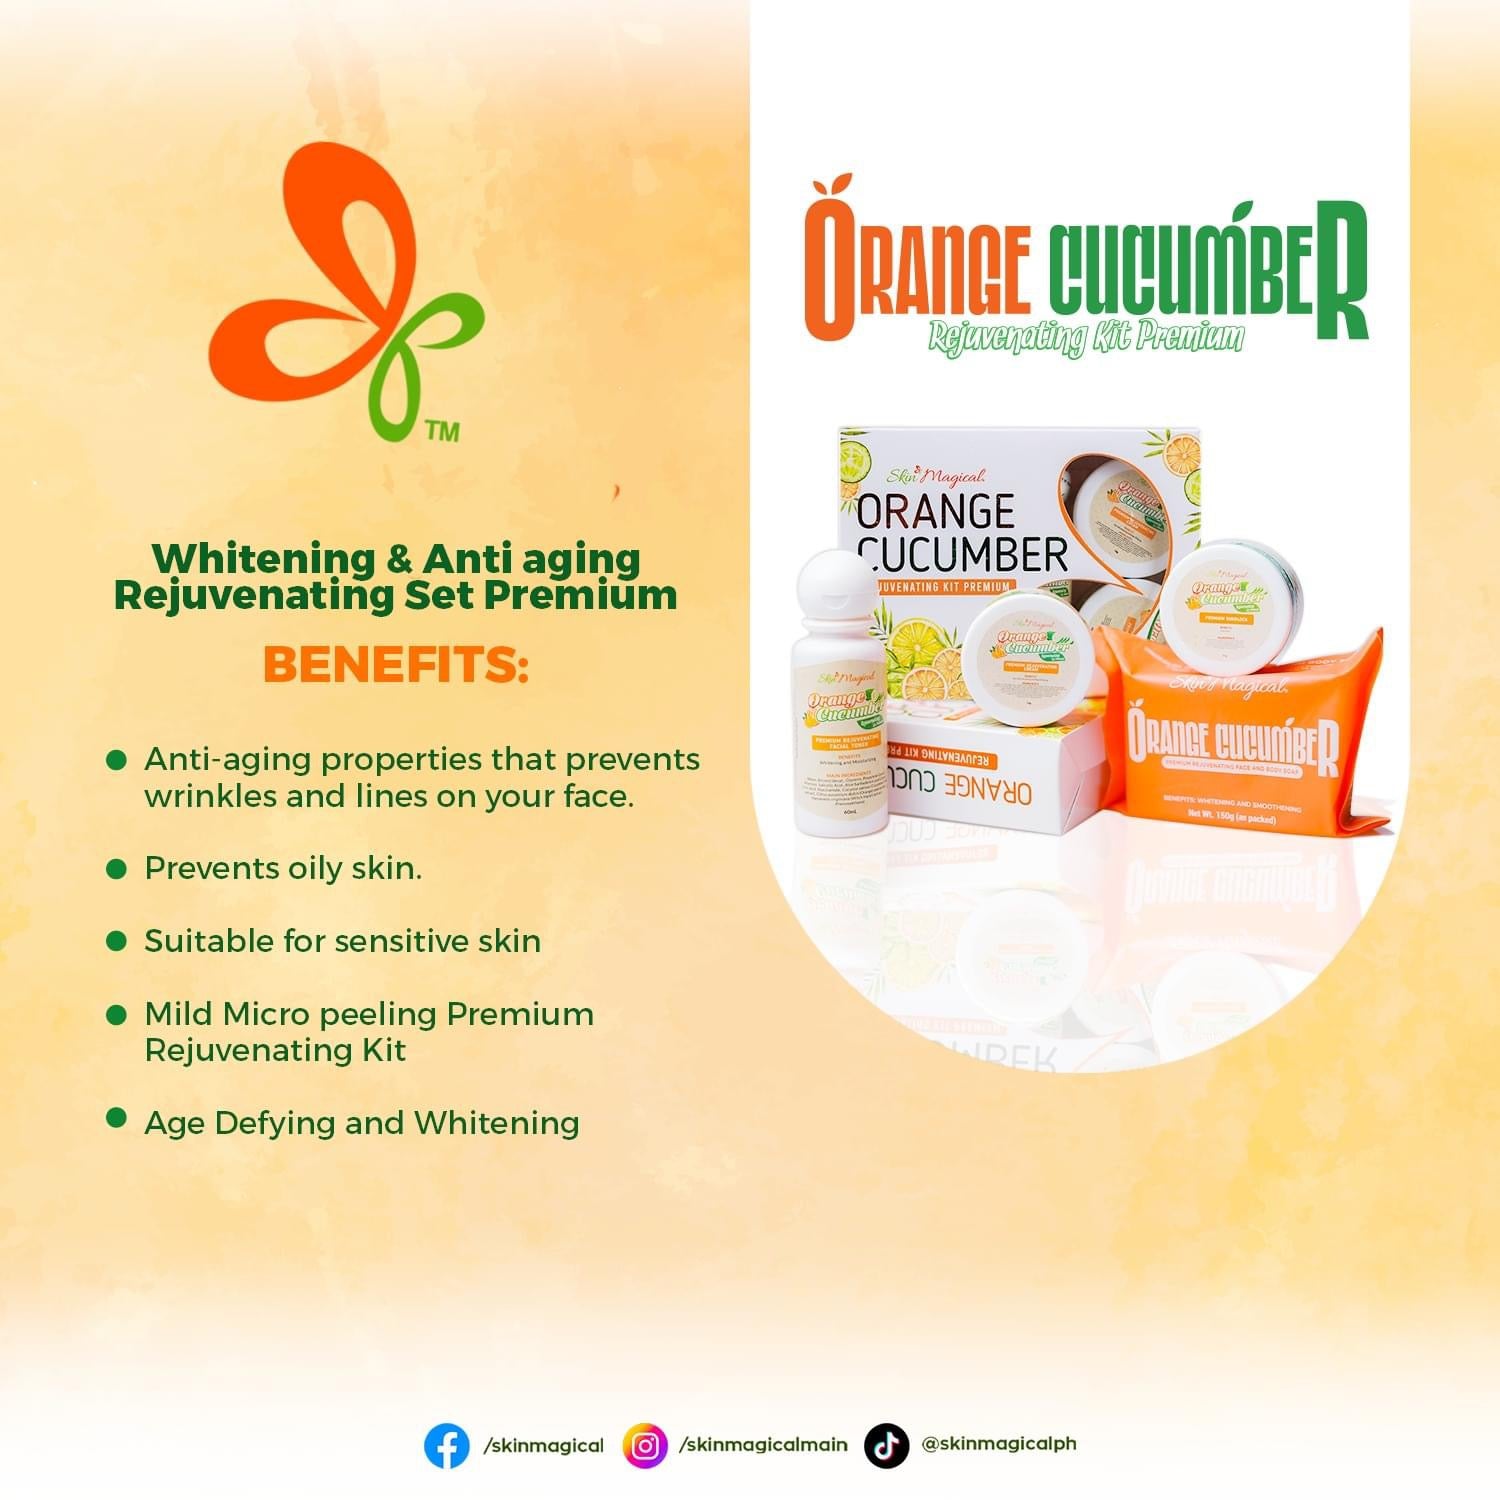 Skin Magical Orange Cucumber - True Beauty Skin Essentials